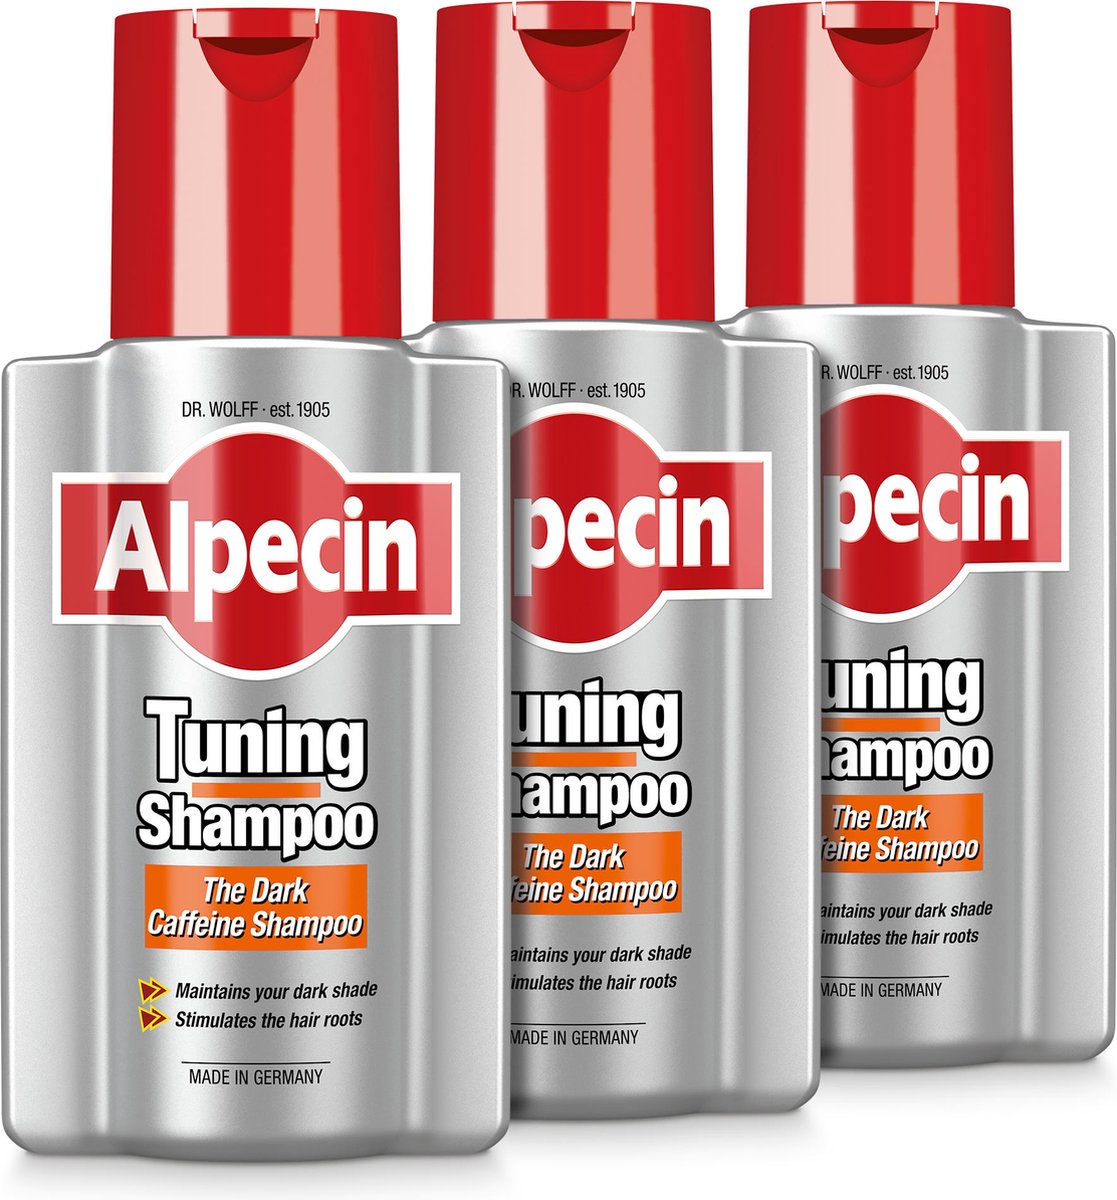 Alpecin Tuning Shampoo 3x 200ml | Behoudt Natuurlijke Haarkleur en Ondersteunt Haargroei | Donkere Cafeïne Shampoo om Grijze Haren